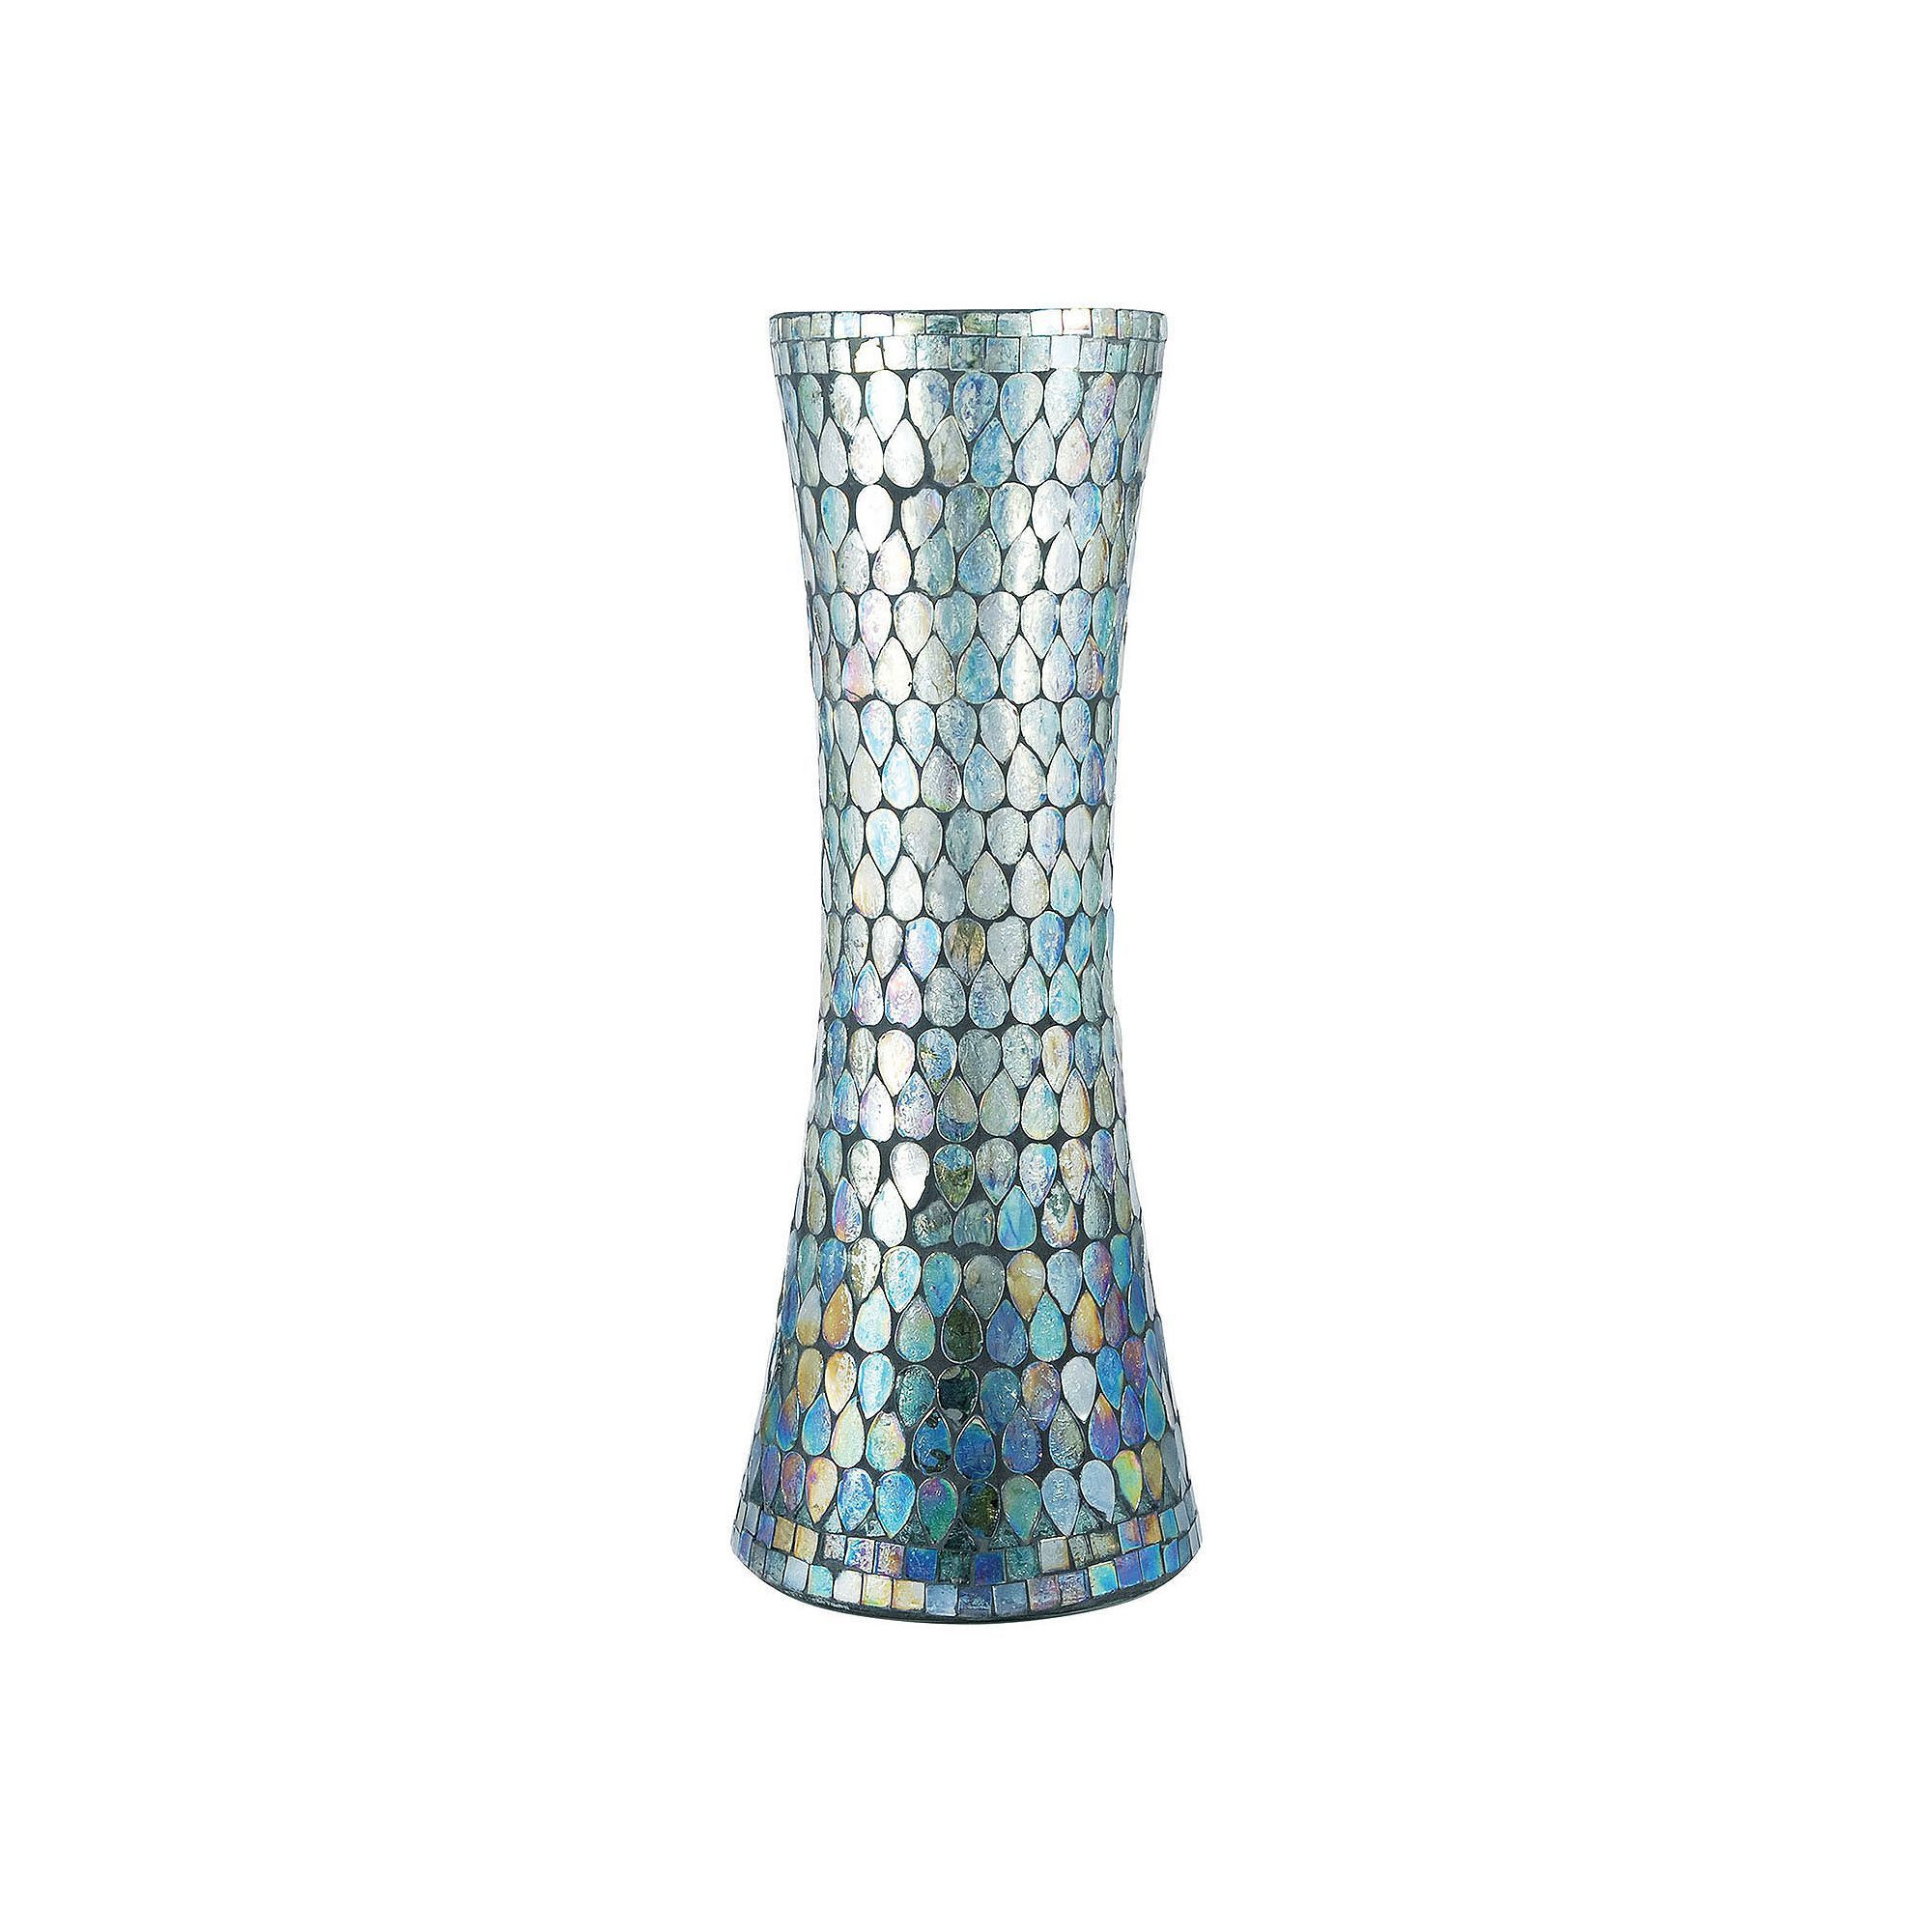 22 Unique Large Mosaic Vase 2024 free download large mosaic vase of pomeroy shimmer mosaic vase mosaic vase and products within pomeroy shimmer mosaic vase